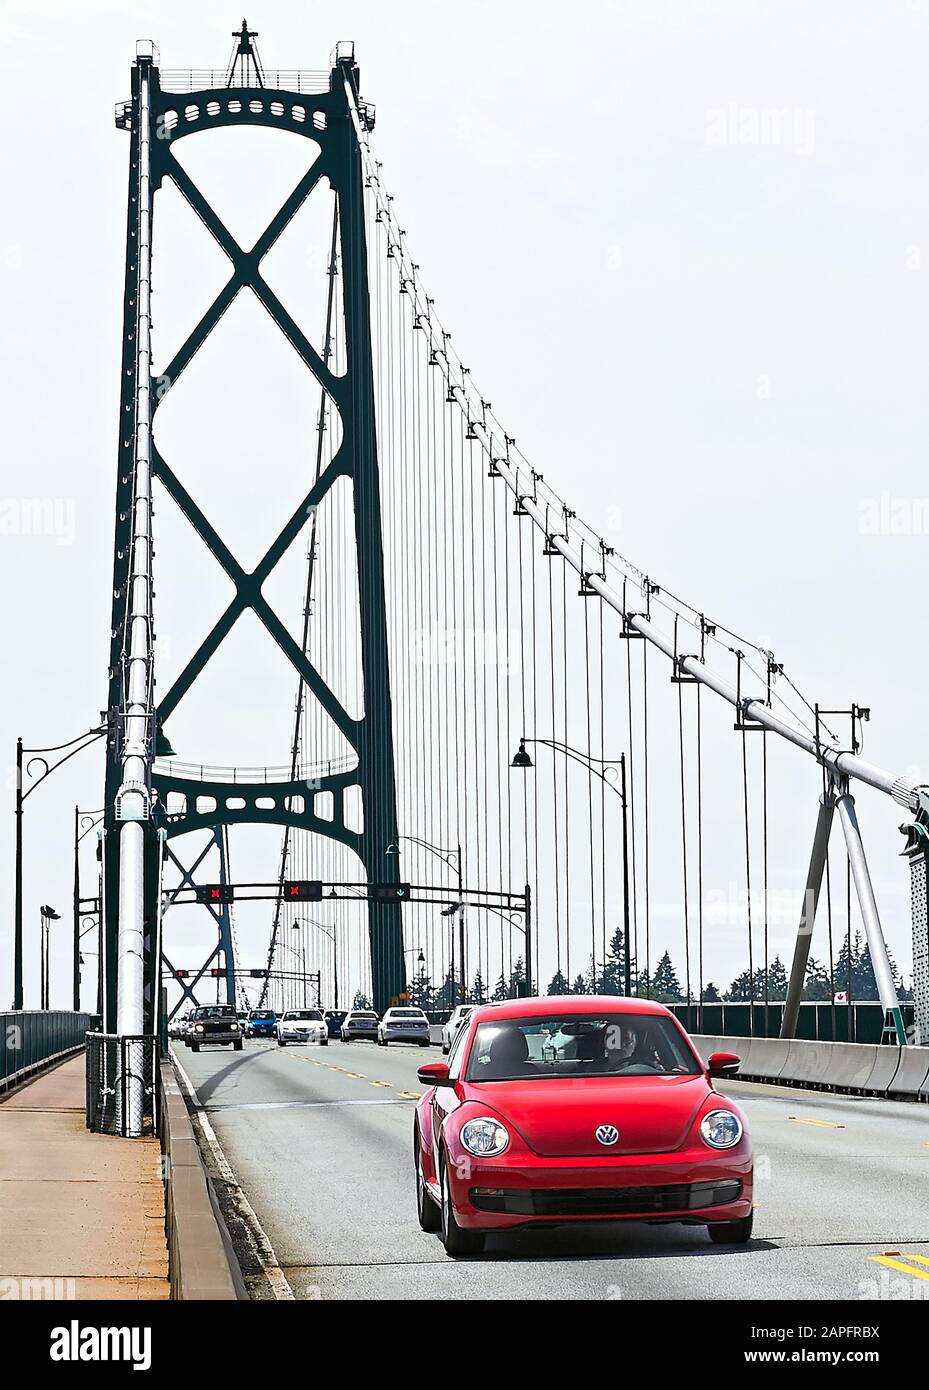 Vancouver, B.C., Canada - 21 giugno 2012: Vista al Lions Gate Bridge, che collega Vancouver alla North Shore, una Volkswagen Bealle rossa di fronte Foto Stock